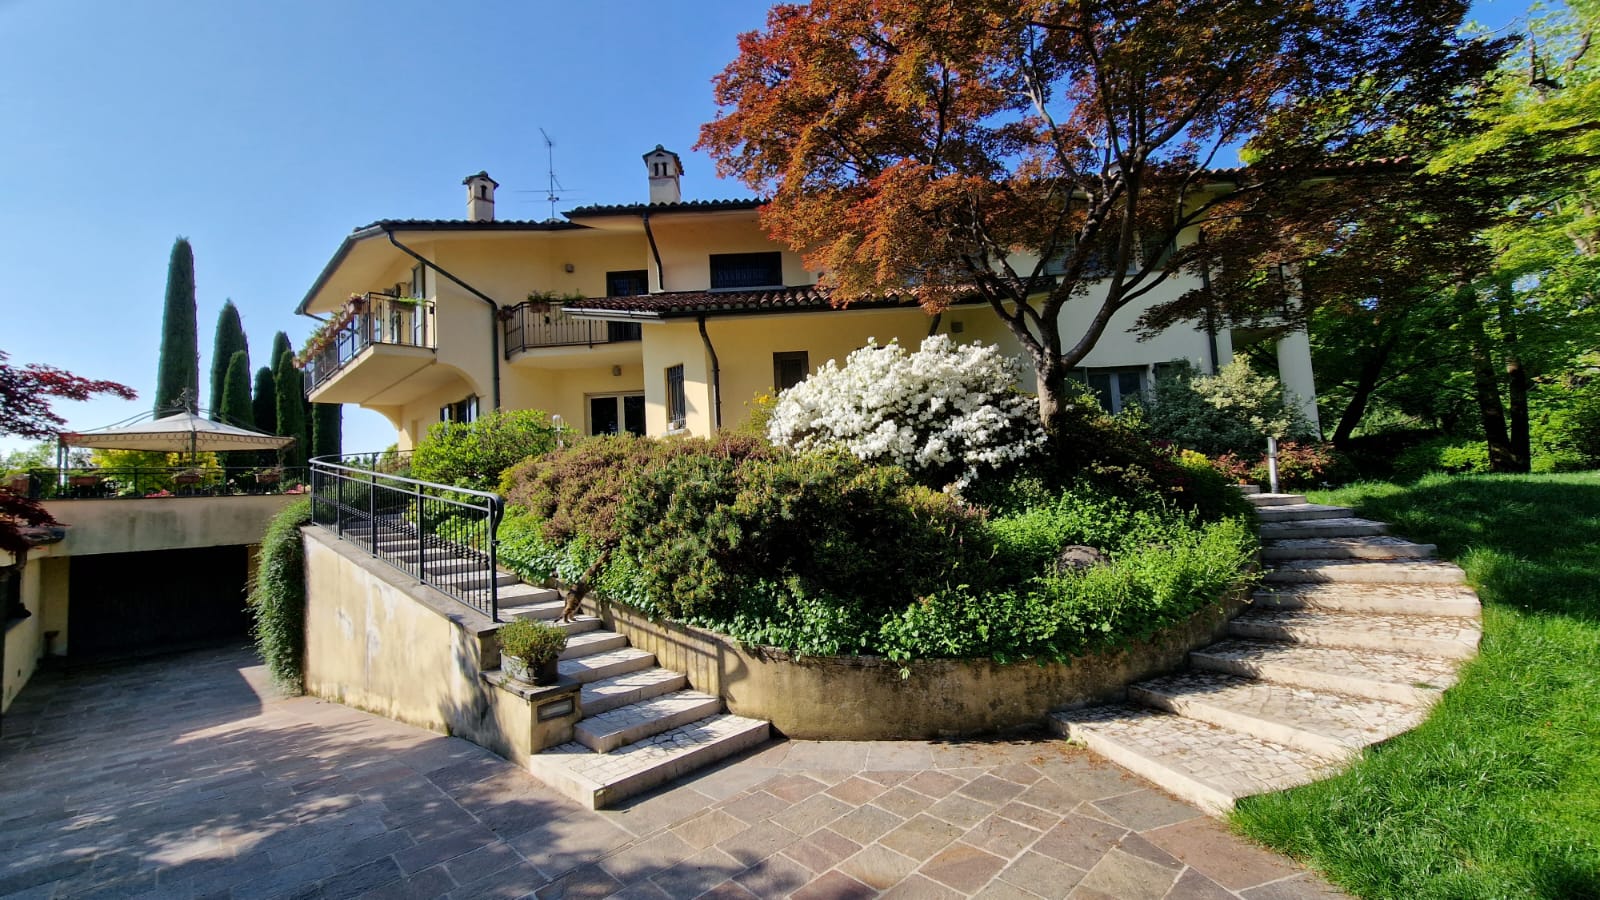 Se vende villa in zona tranquila Bergamo Lombardia